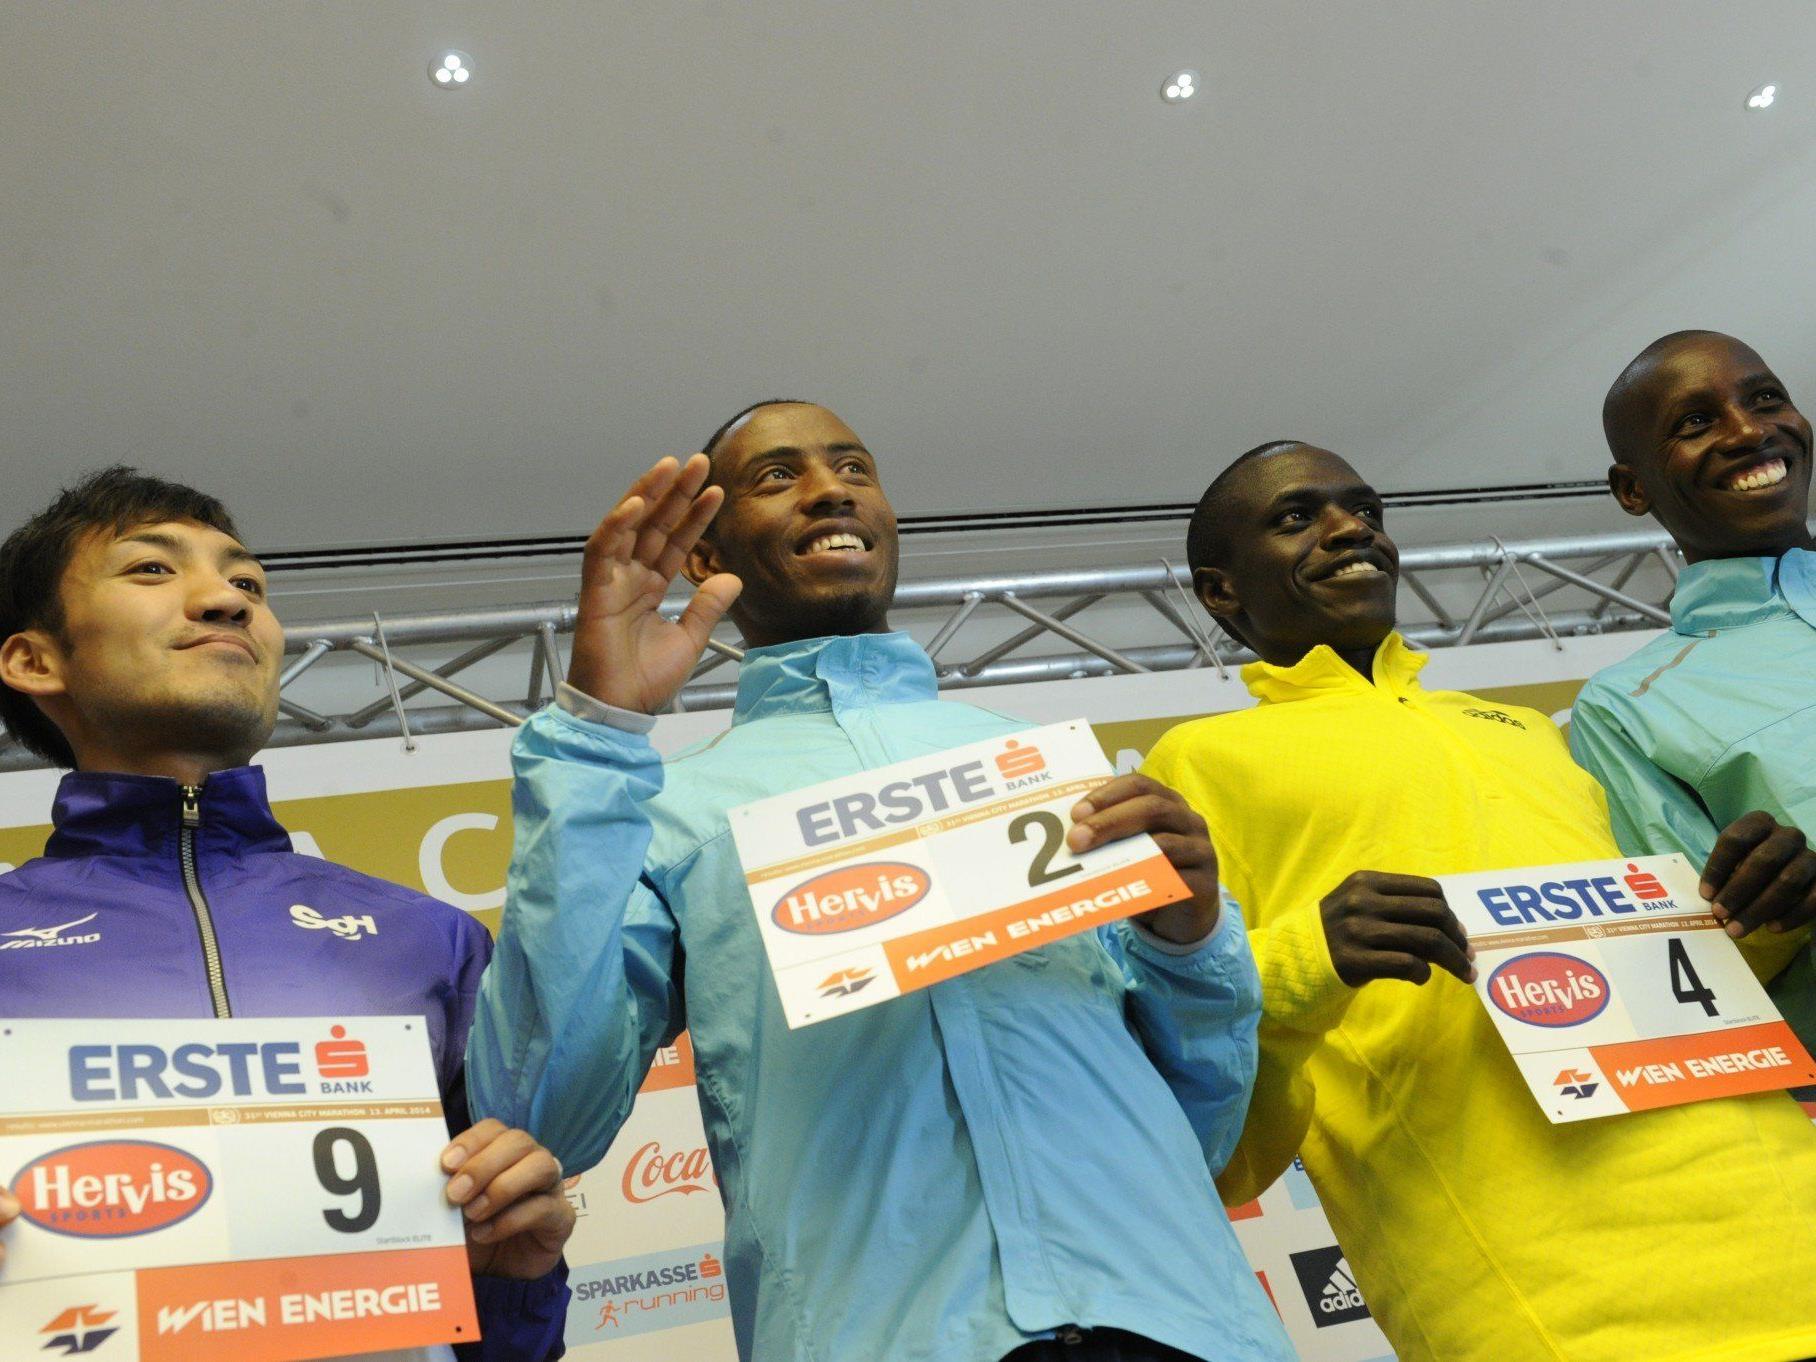 v.l.n.r Die Athleten Ryo Yamamoto (JPN), Getu Feleke (KEN), John Kiprotich (KEN) und Henry Sugut (KEN) am Freitag anl. einer Pressekonferenz zum Wien-Marathon..